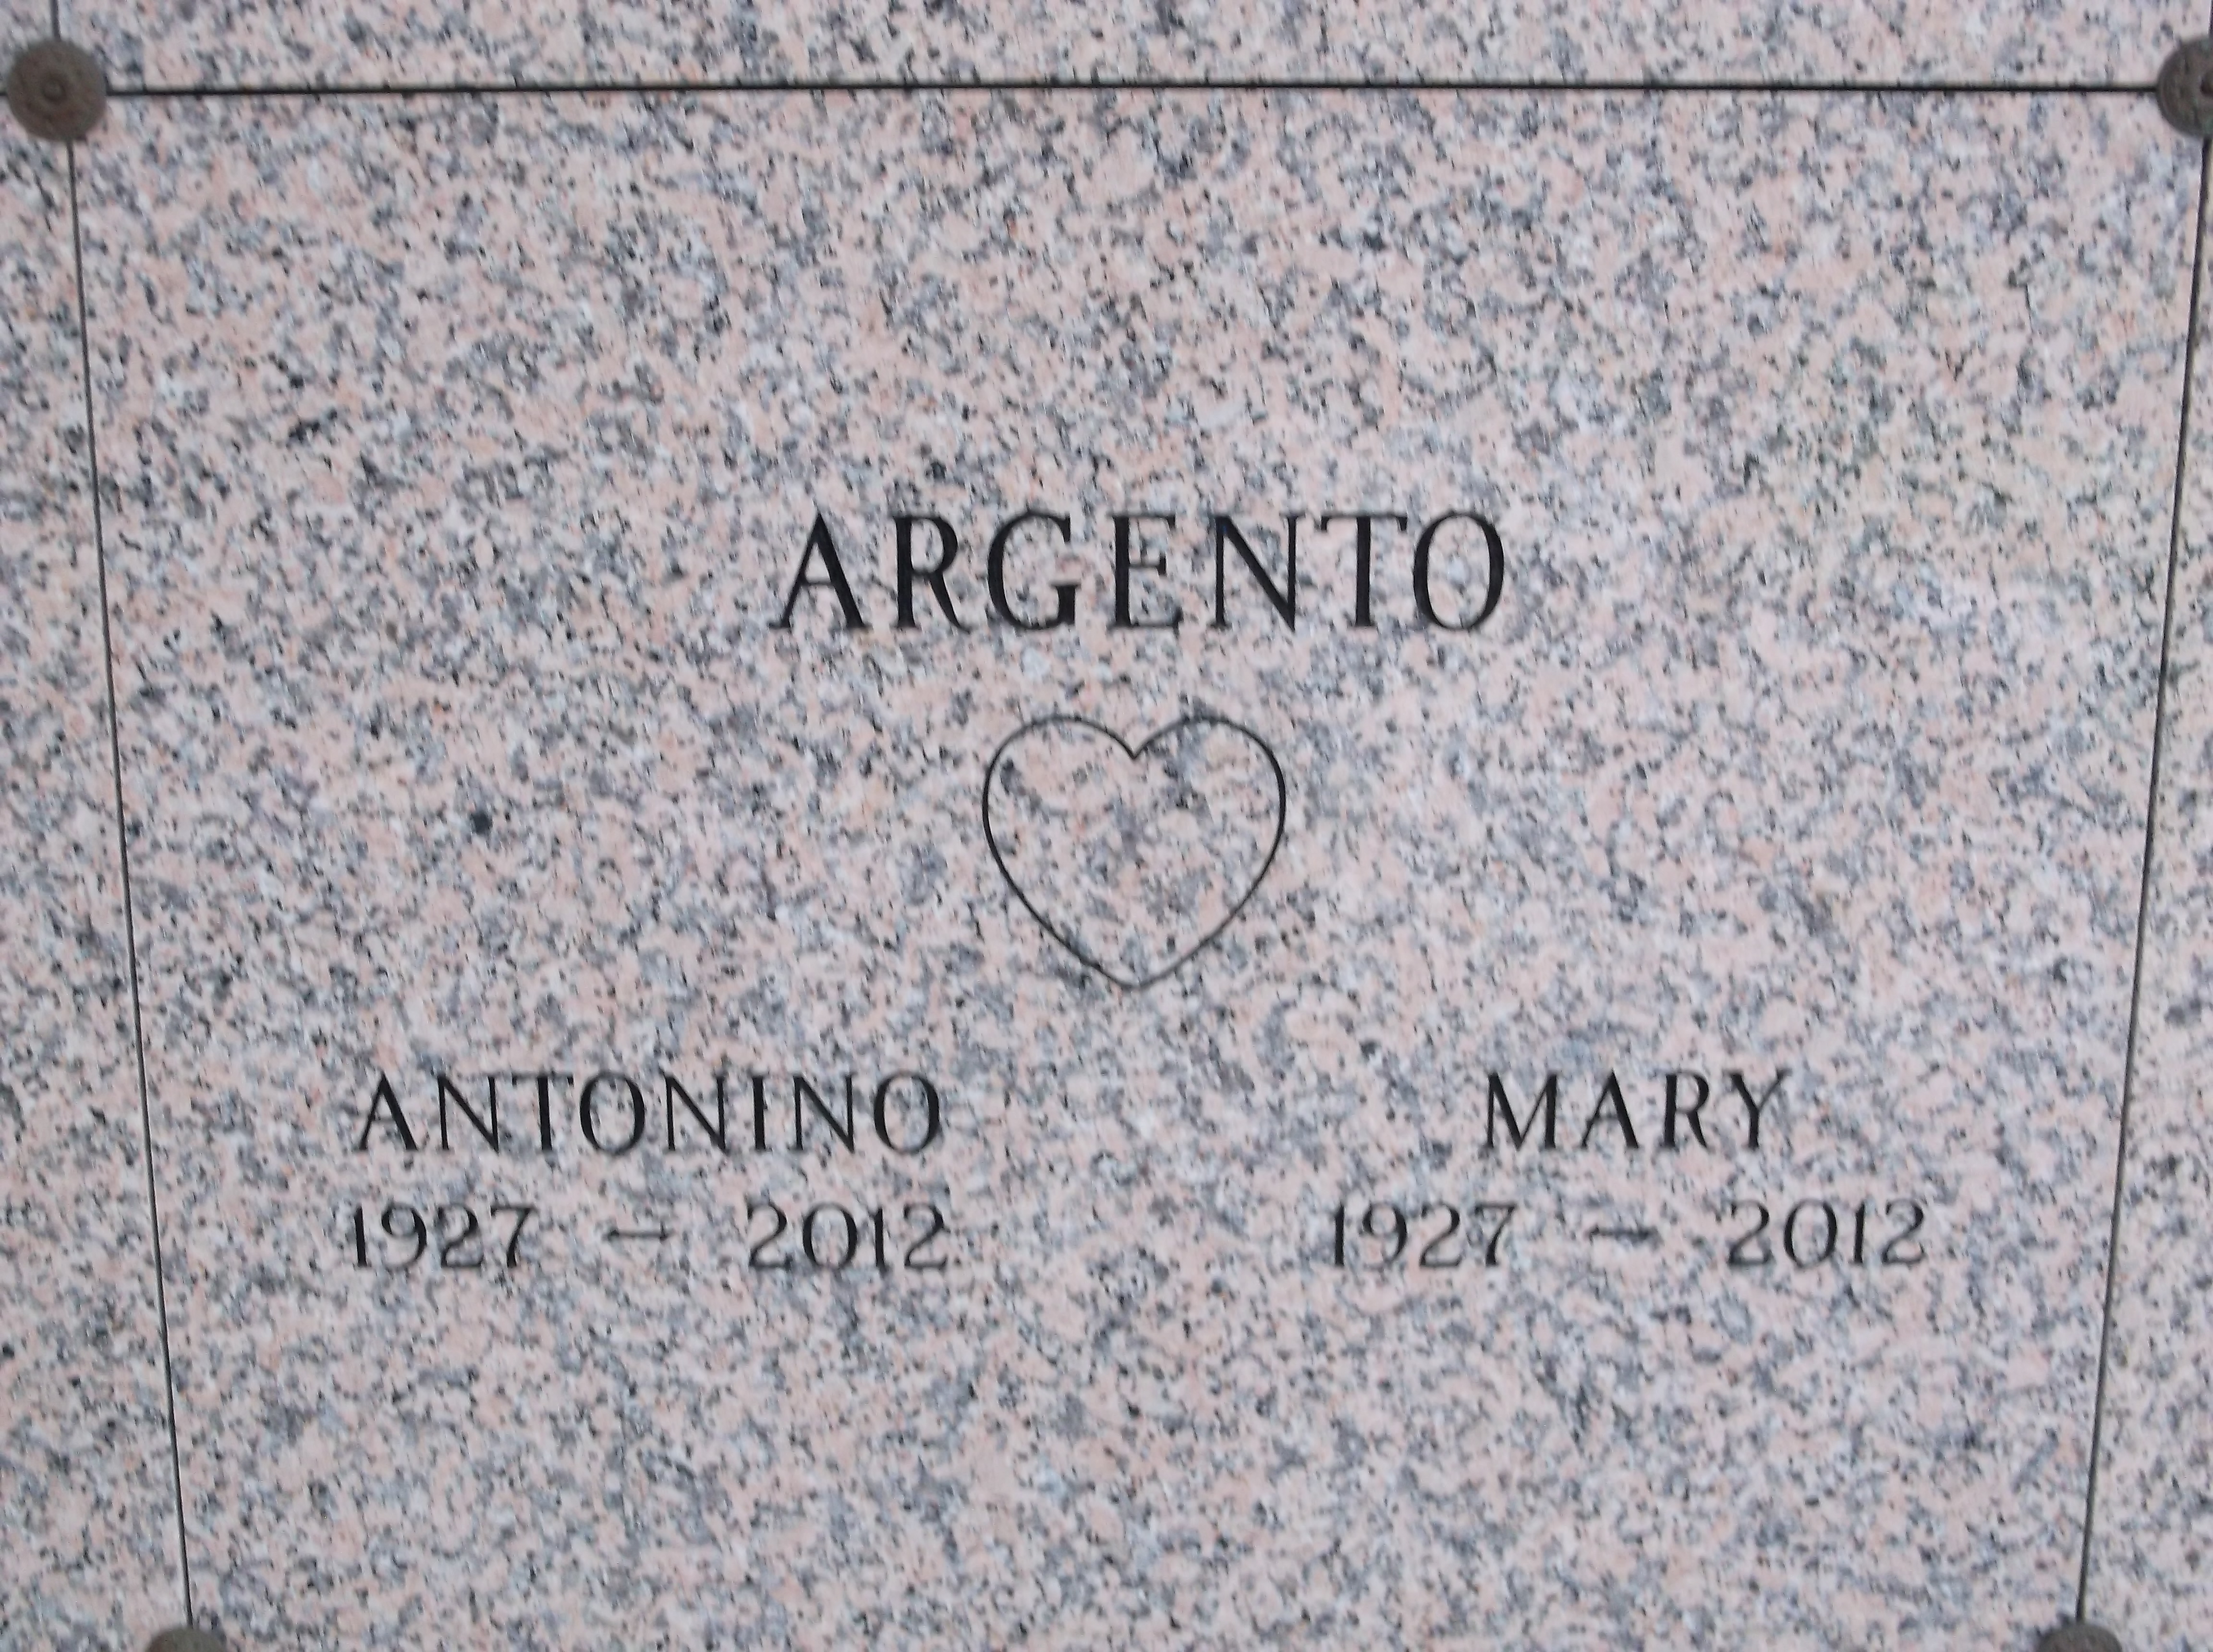 Antonino Argento